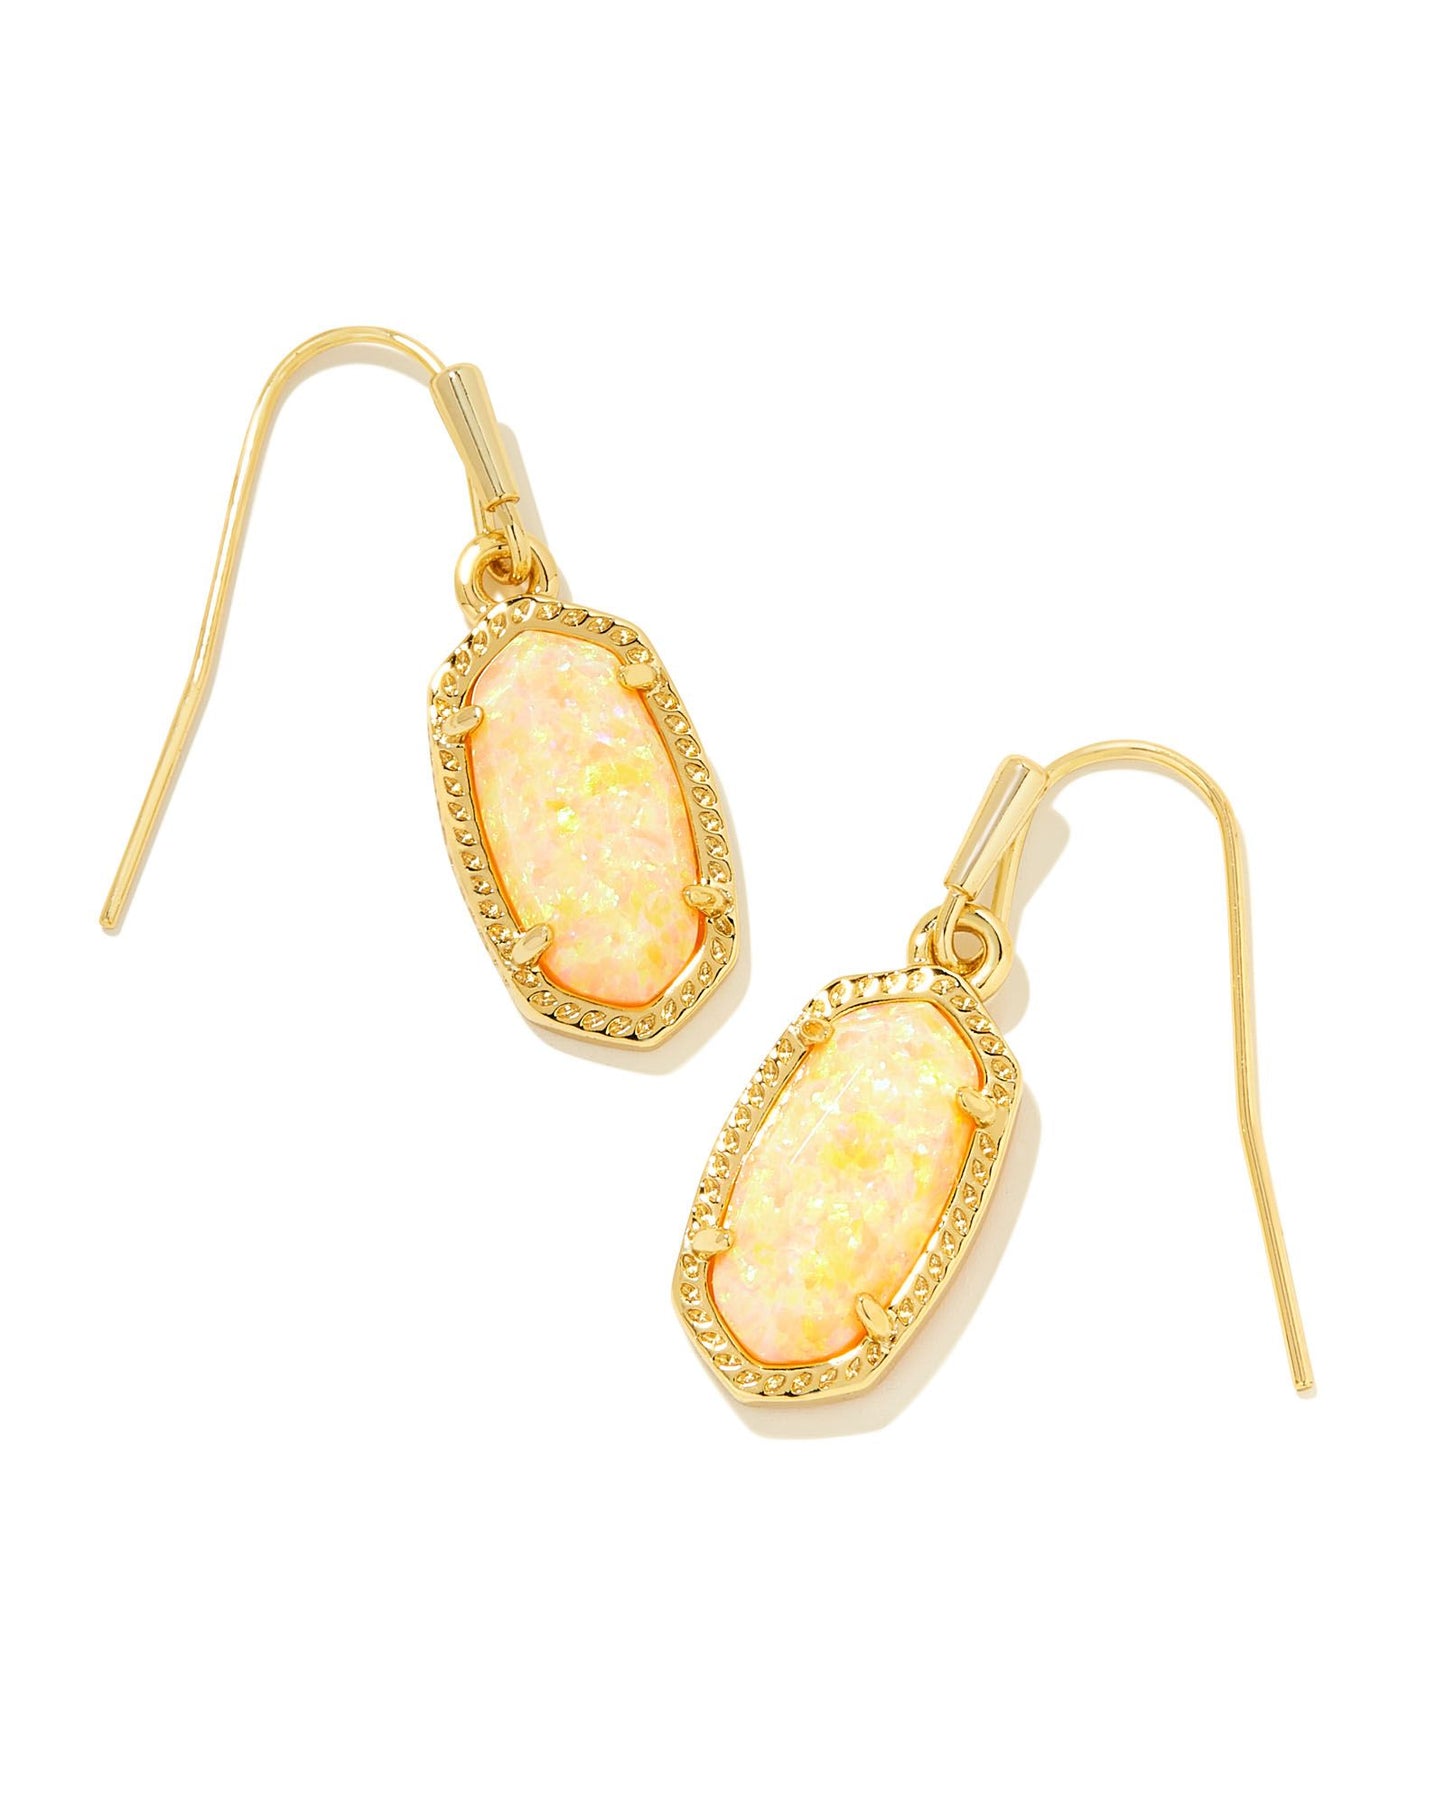 Lee Drop Earrings | Gold & Yellow Kyocera Opal